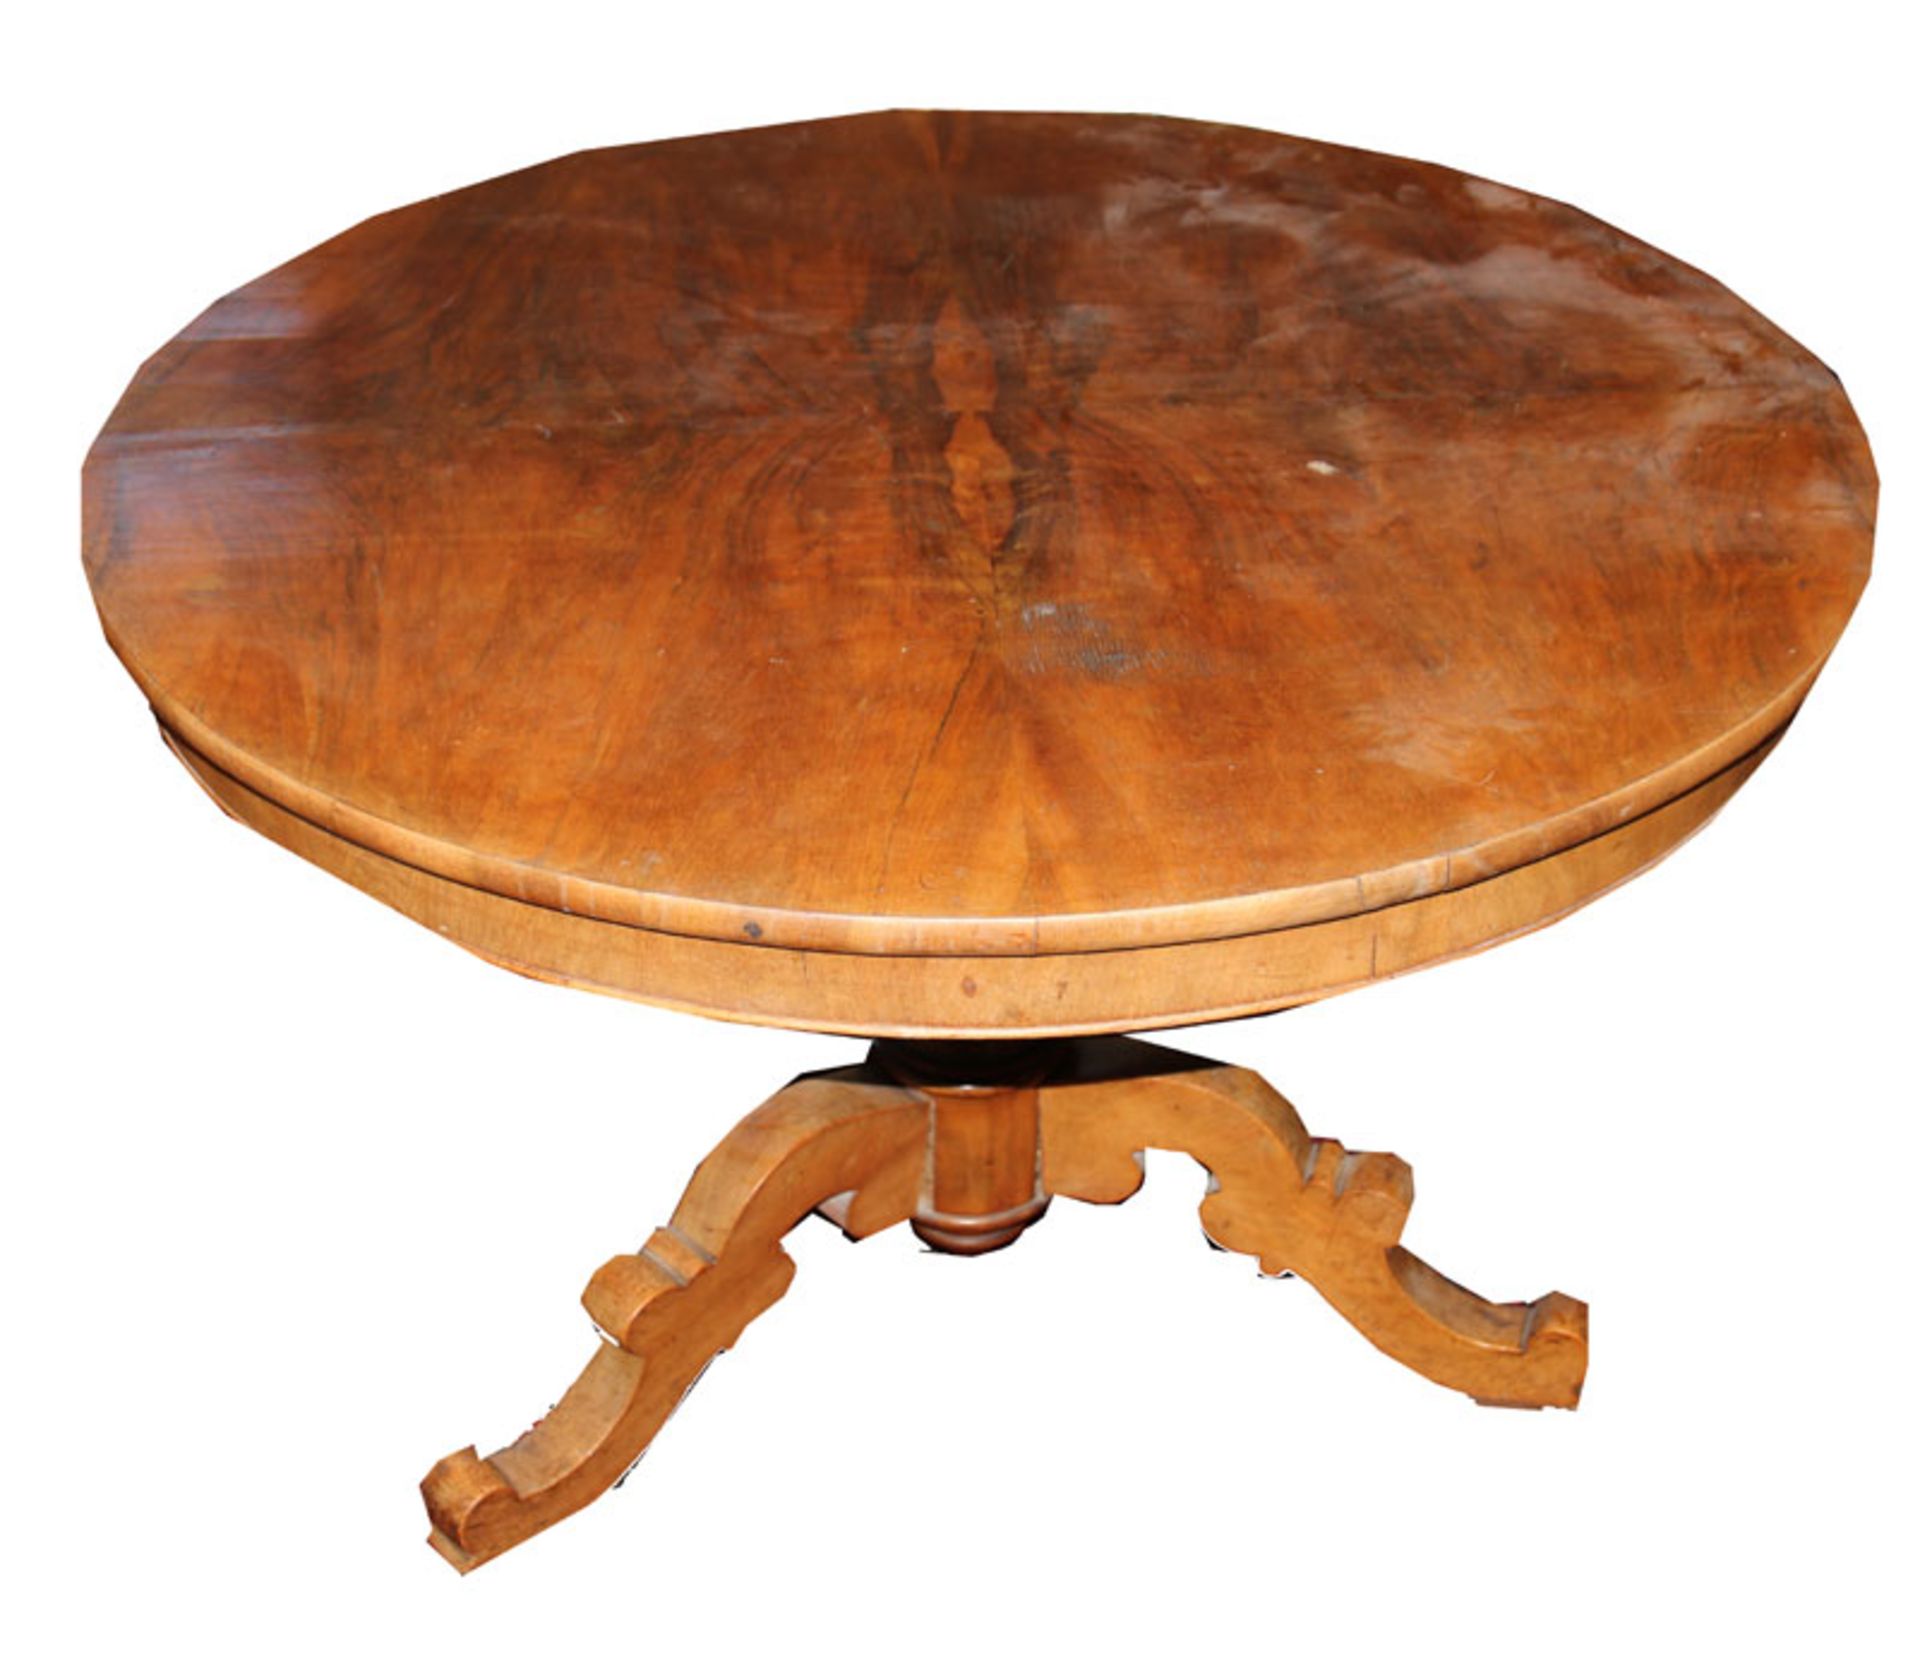 Runder Tisch auf gedrechseltem Mittelfuß mit 3 Beinen und Rollen, 19. Jahrhundert, unrestaurierter